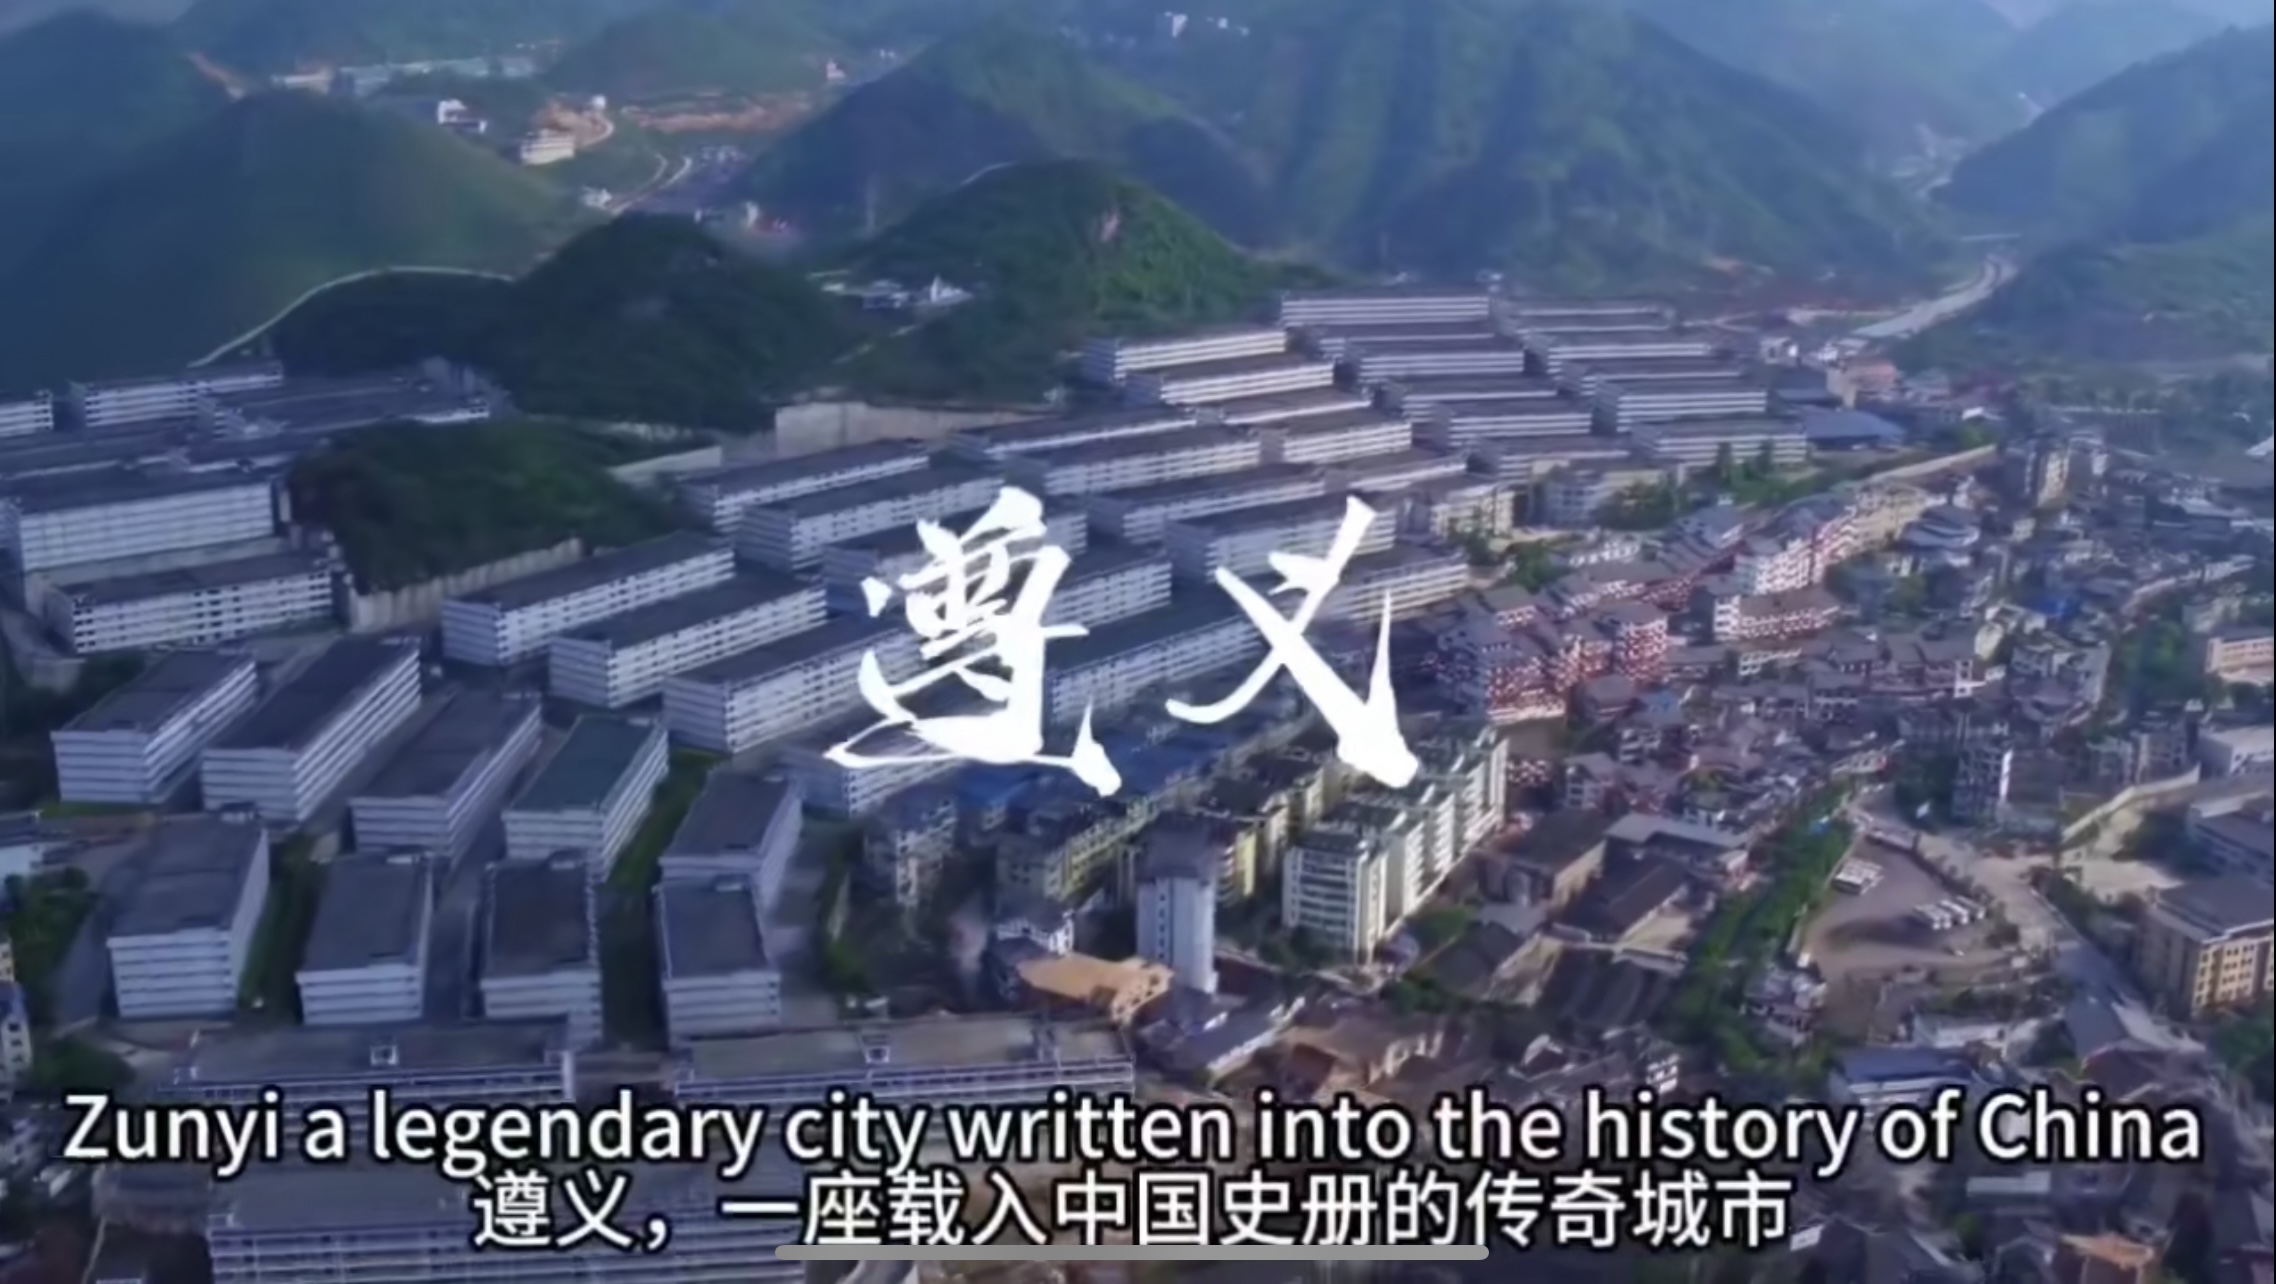 遵义，是一座载入中国史册的传奇城市